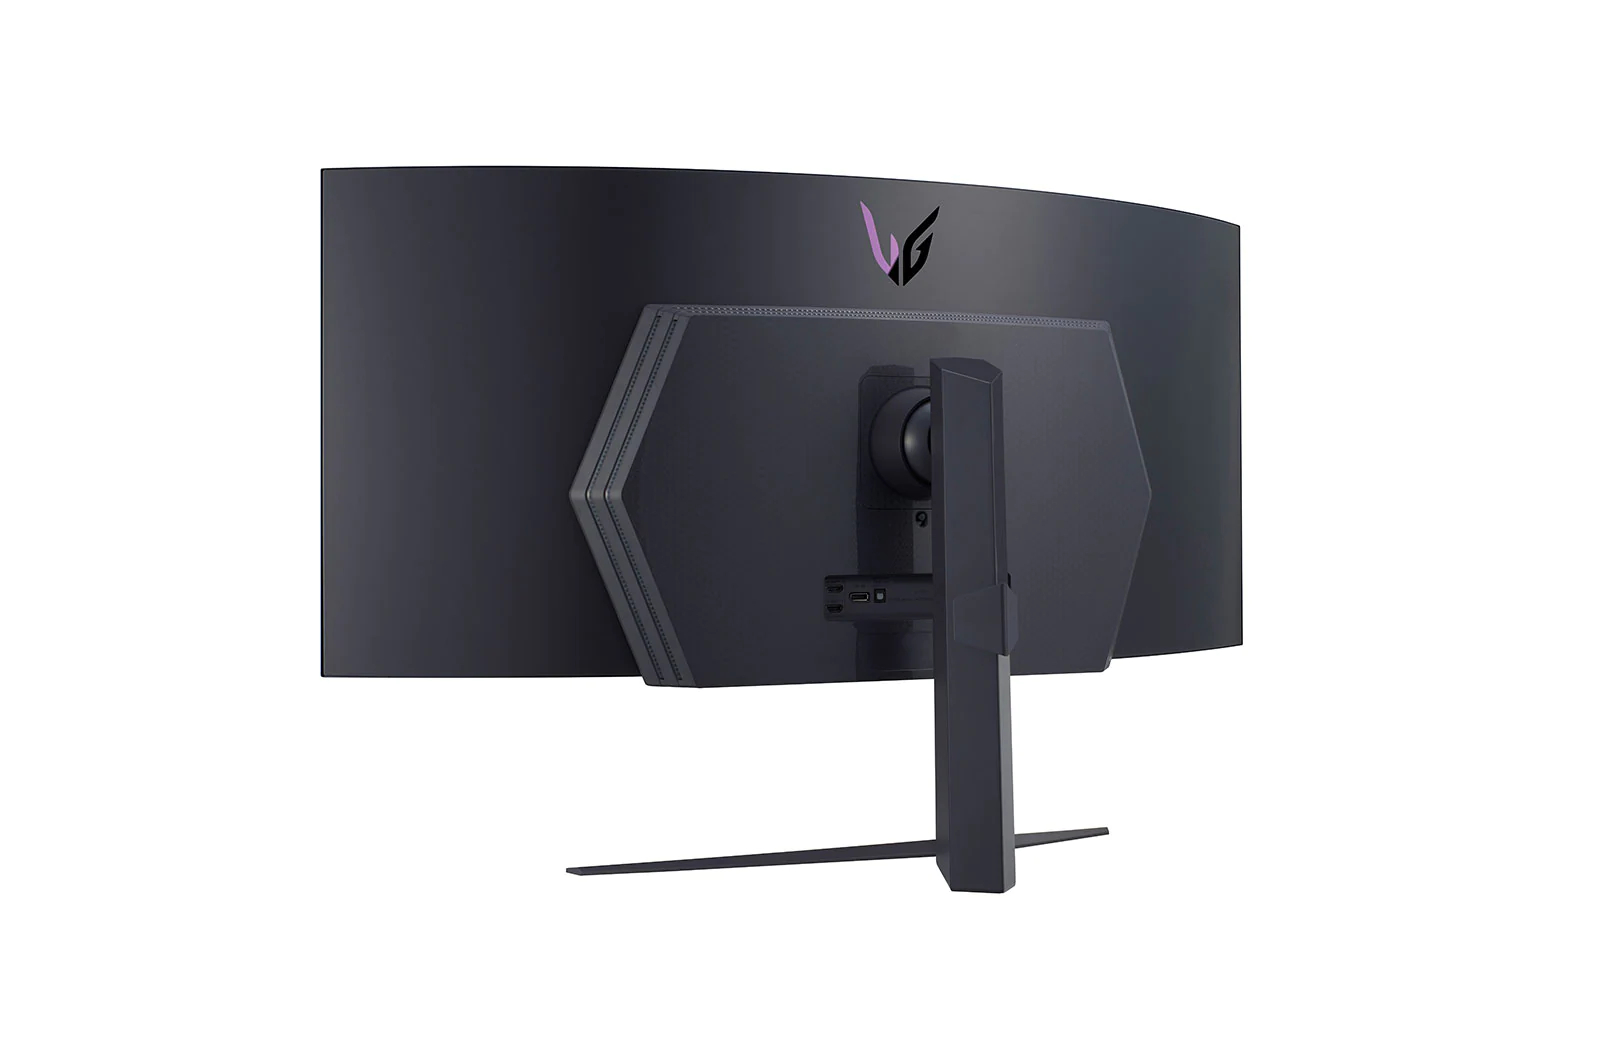 Immagine pubblicata in relazione al seguente contenuto: LG introduce il gaming monitor UltraGear 45GR95QE-B con pannello OLED da 45-inch | Nome immagine: news33901_LG-UltraGear-45GR95QE-B_3.jpg